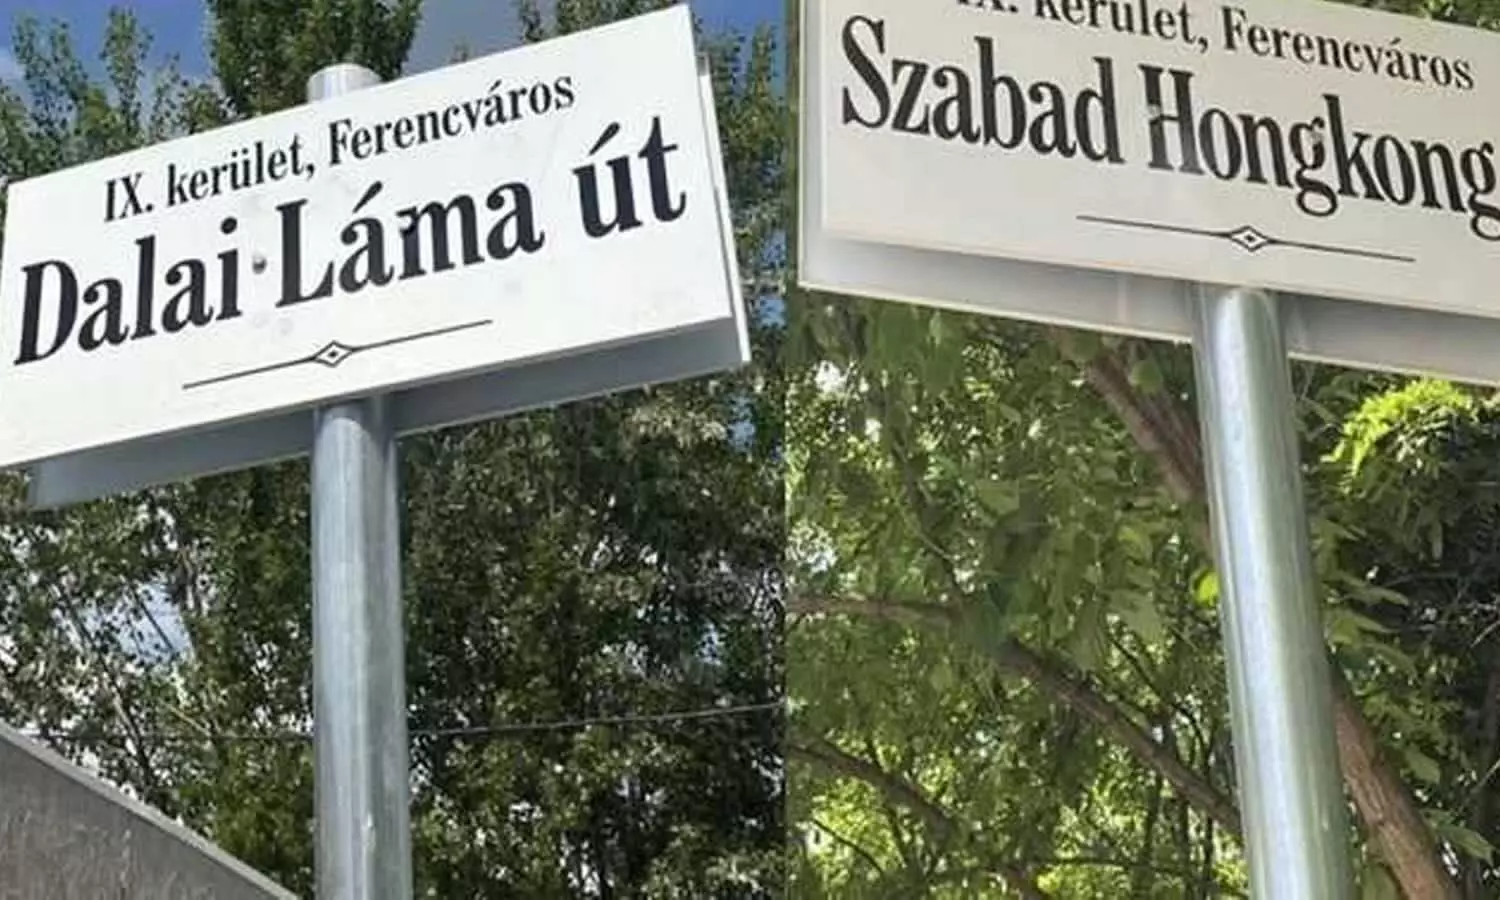 हंगरी में सड़कों के नए नाम: दलाई लामा, फ्री हांगकांग, उइगर शहीद, चीन के जख्मों पर छिड़का नमक